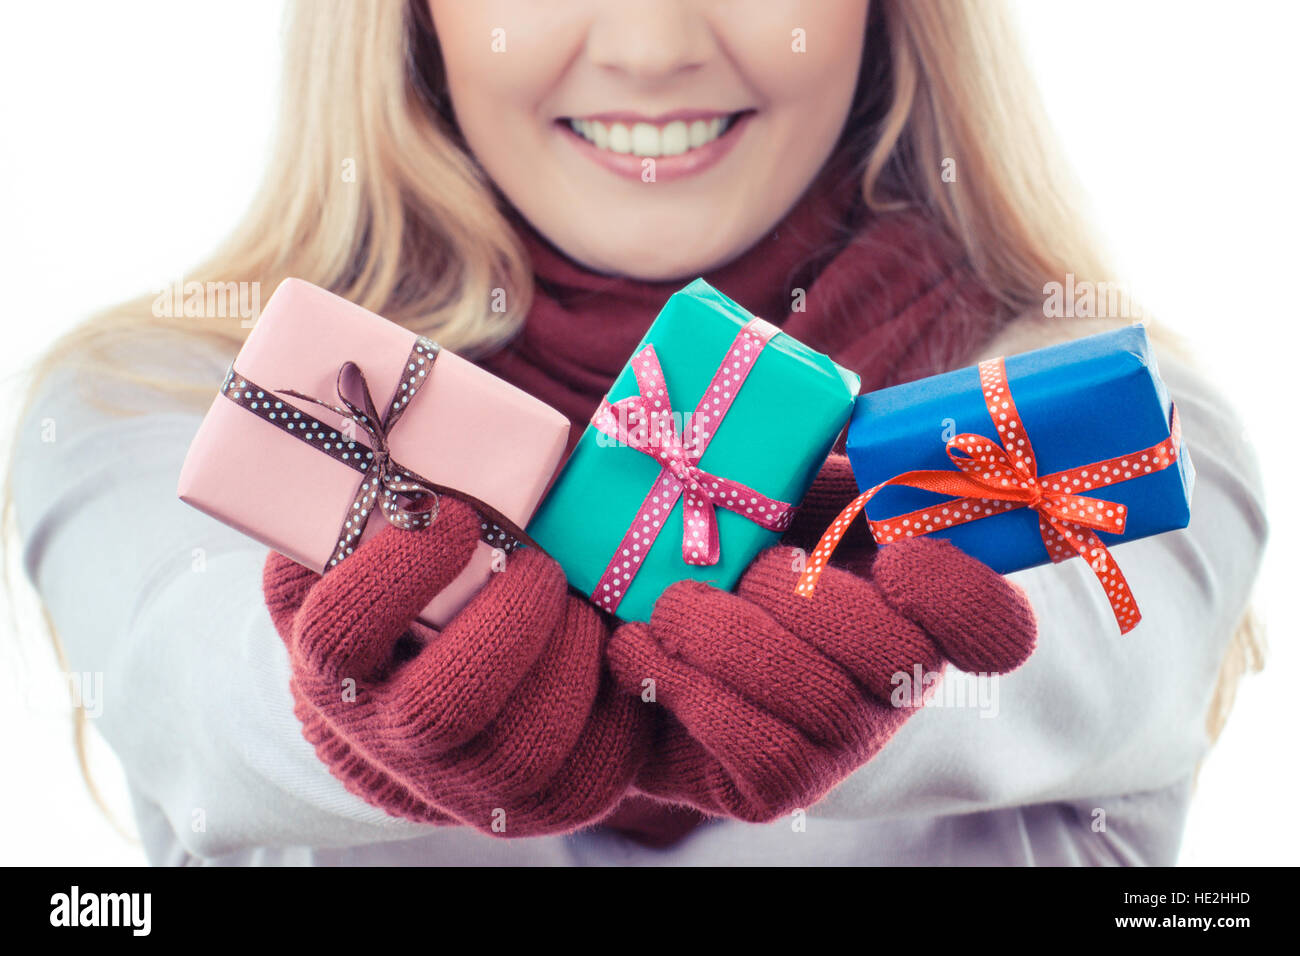 Foto d'epoca, donna sorridente in guanti di lana avvolto di contenimento di regali di Natale, Valentino, compleanno o altra celebrazione, sfondo bianco Foto Stock